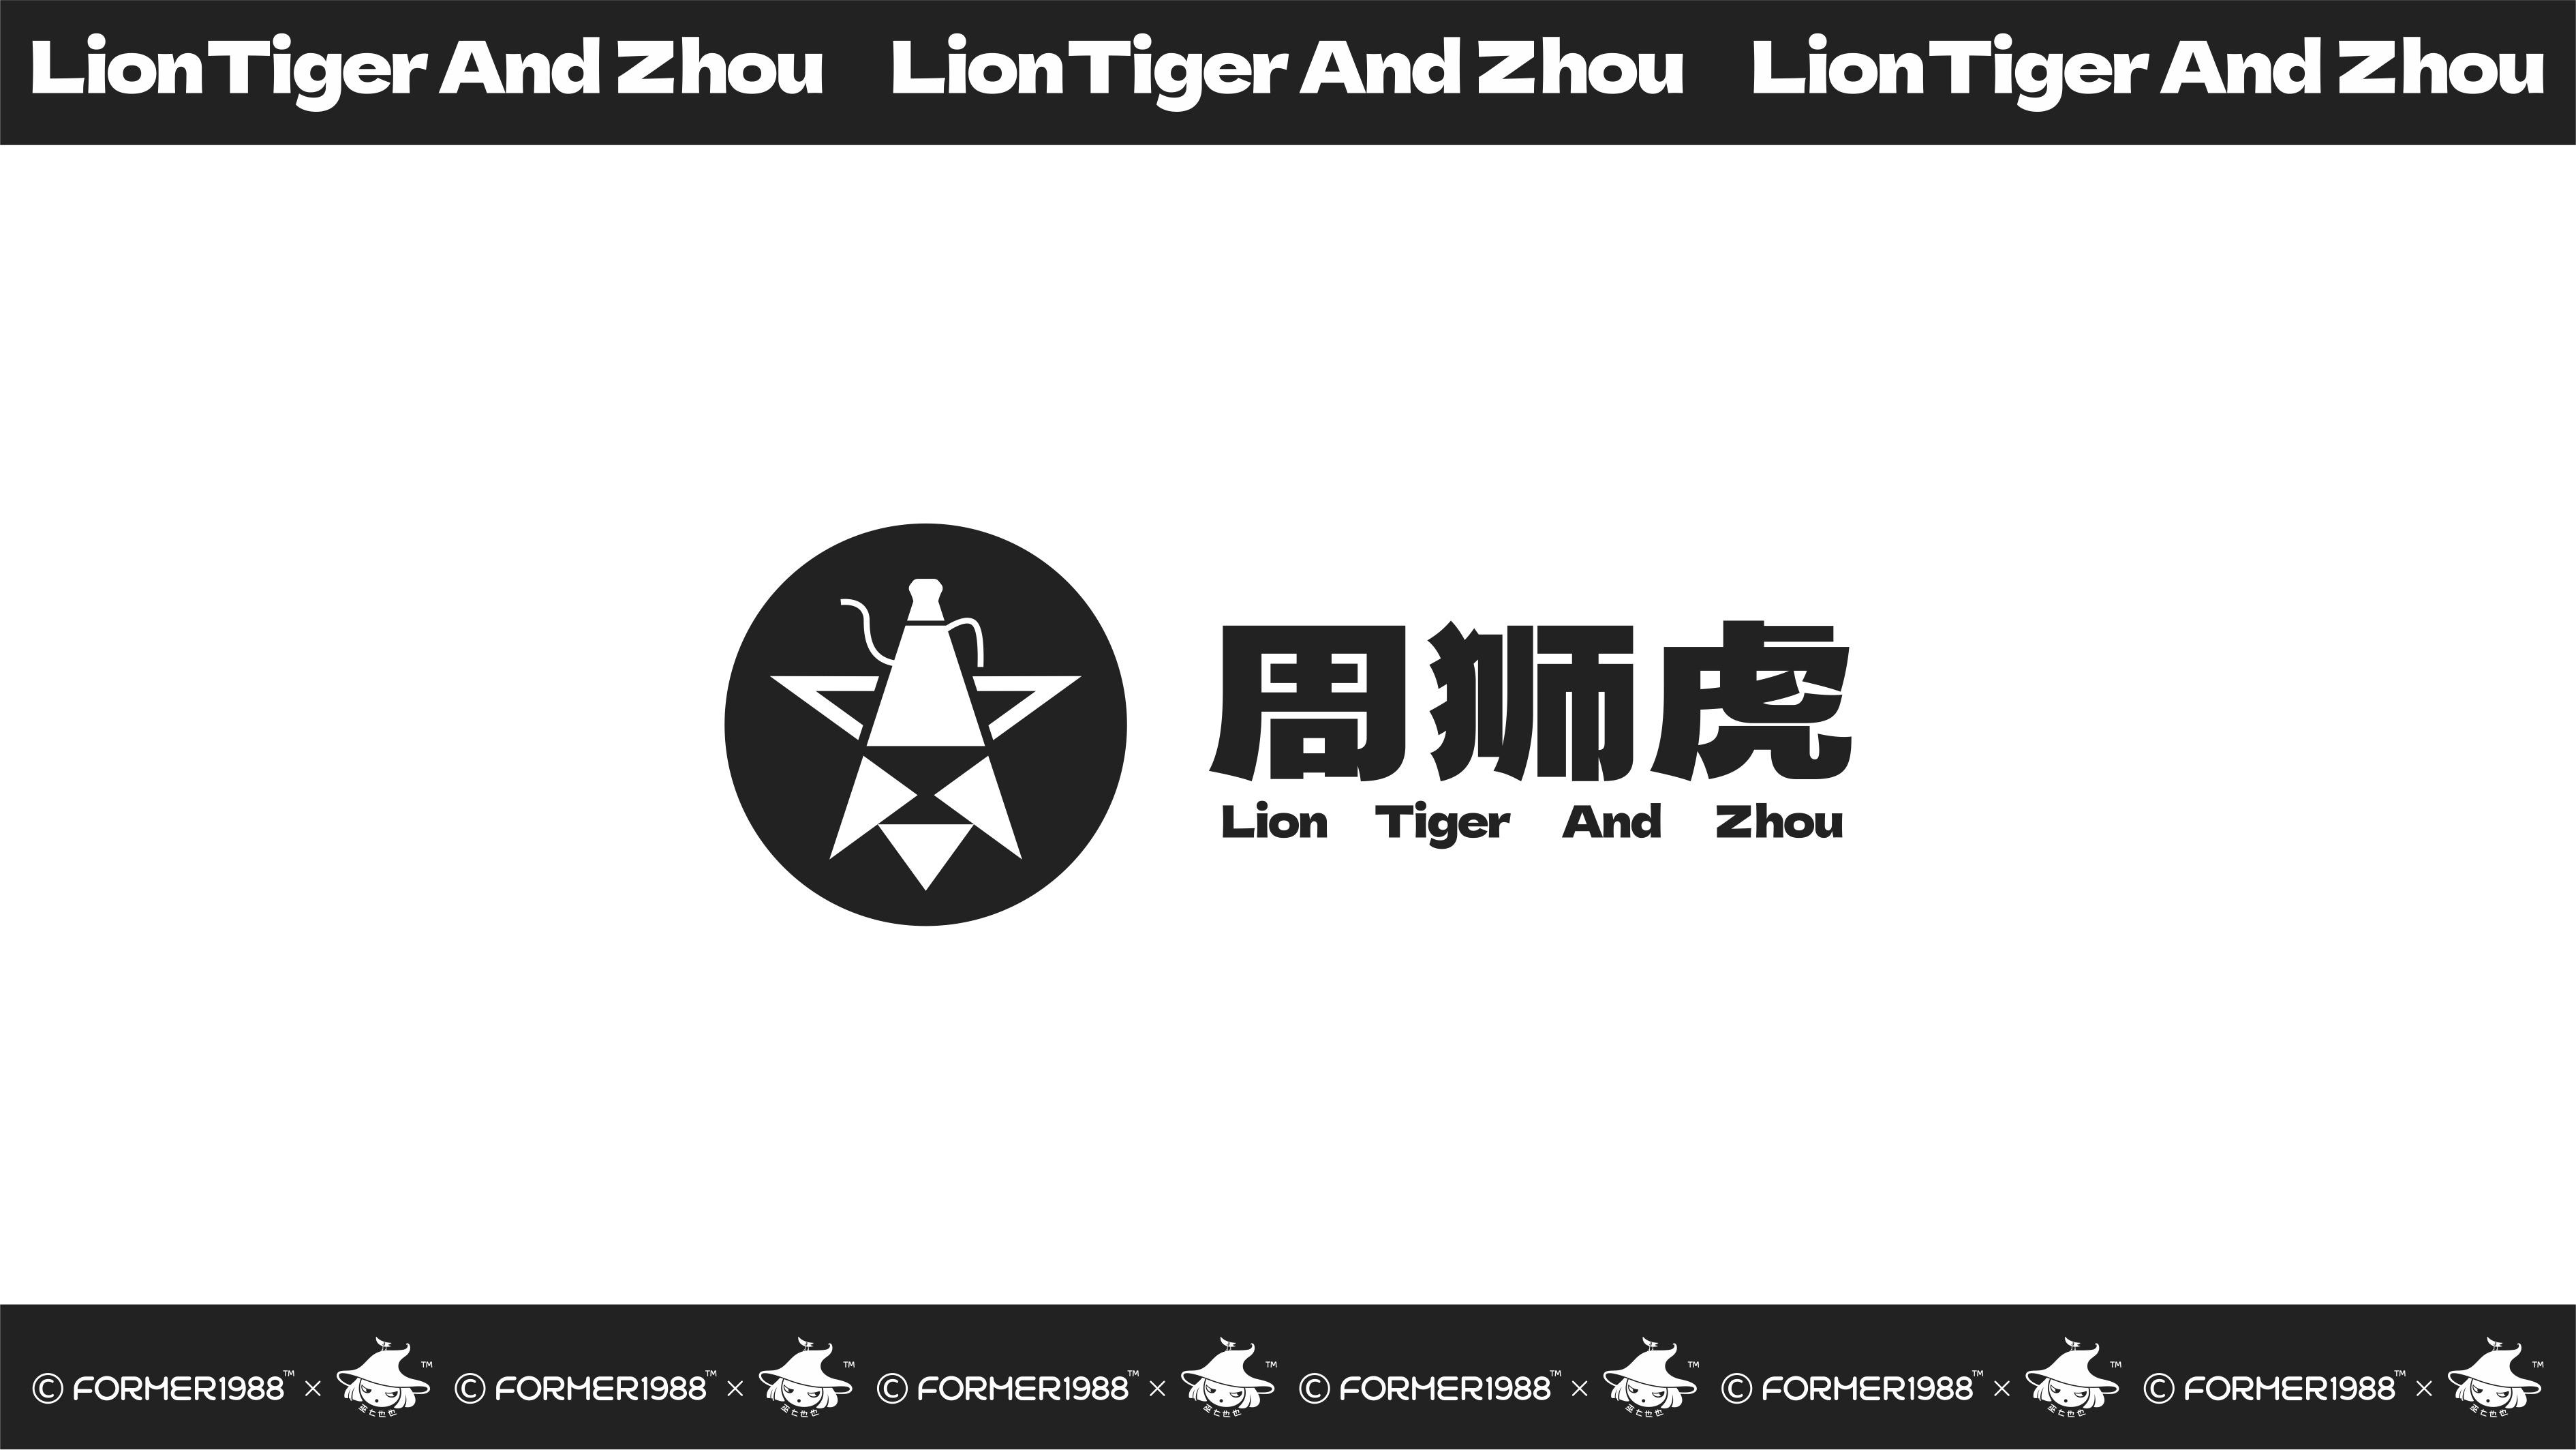 周狮虎咖啡LOGO和包装设计 | 原创 插画